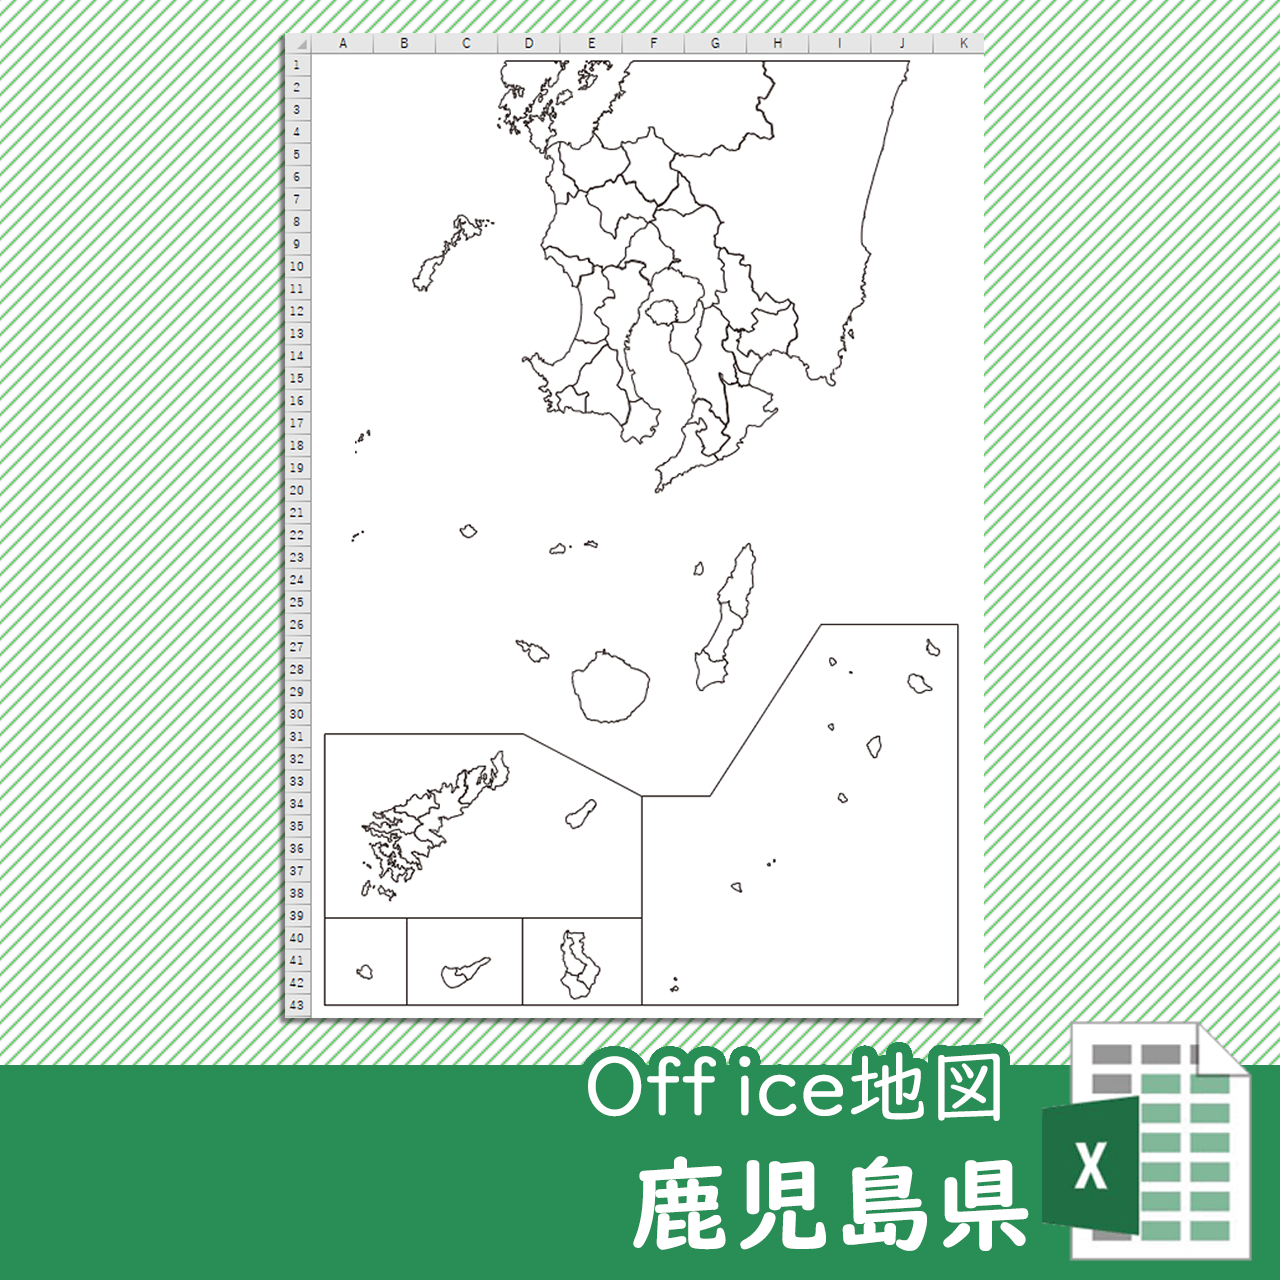 鹿児島県のoffice地図